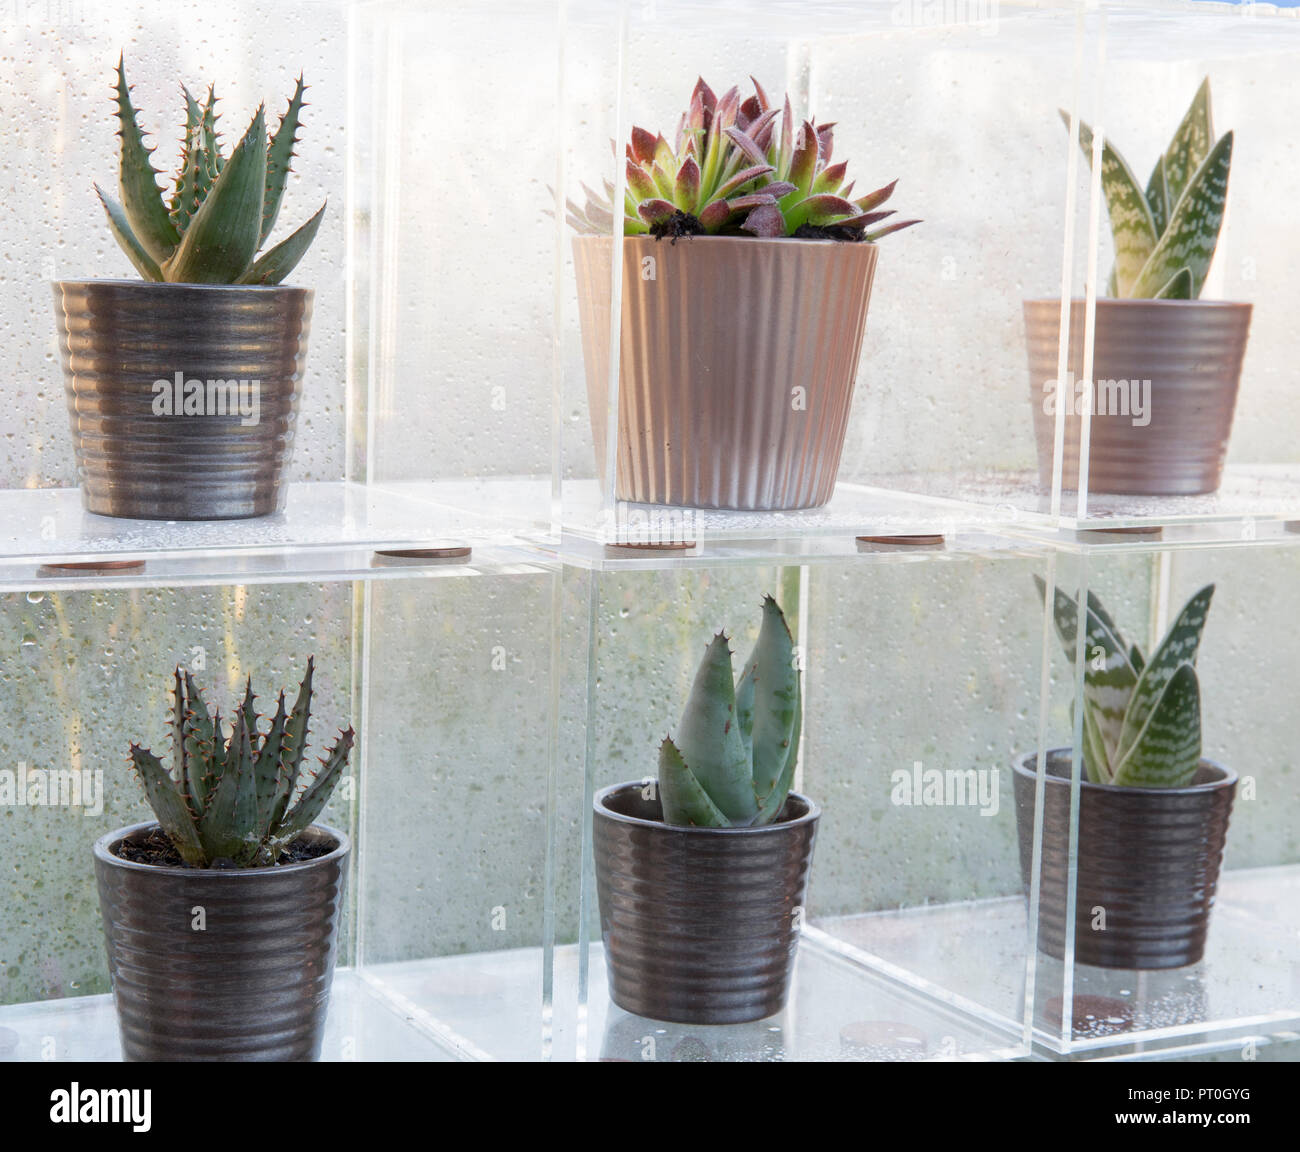 Plexiglas Boxen anzeigen eine Sammlung von Sukkulenten wachsen in Keramik Blumentöpfe, Sempervivum, Aloe" Paradisicum', zu Hause, zu wachsen, zu Abend essen, entspannen, RHS Ma Stockfoto